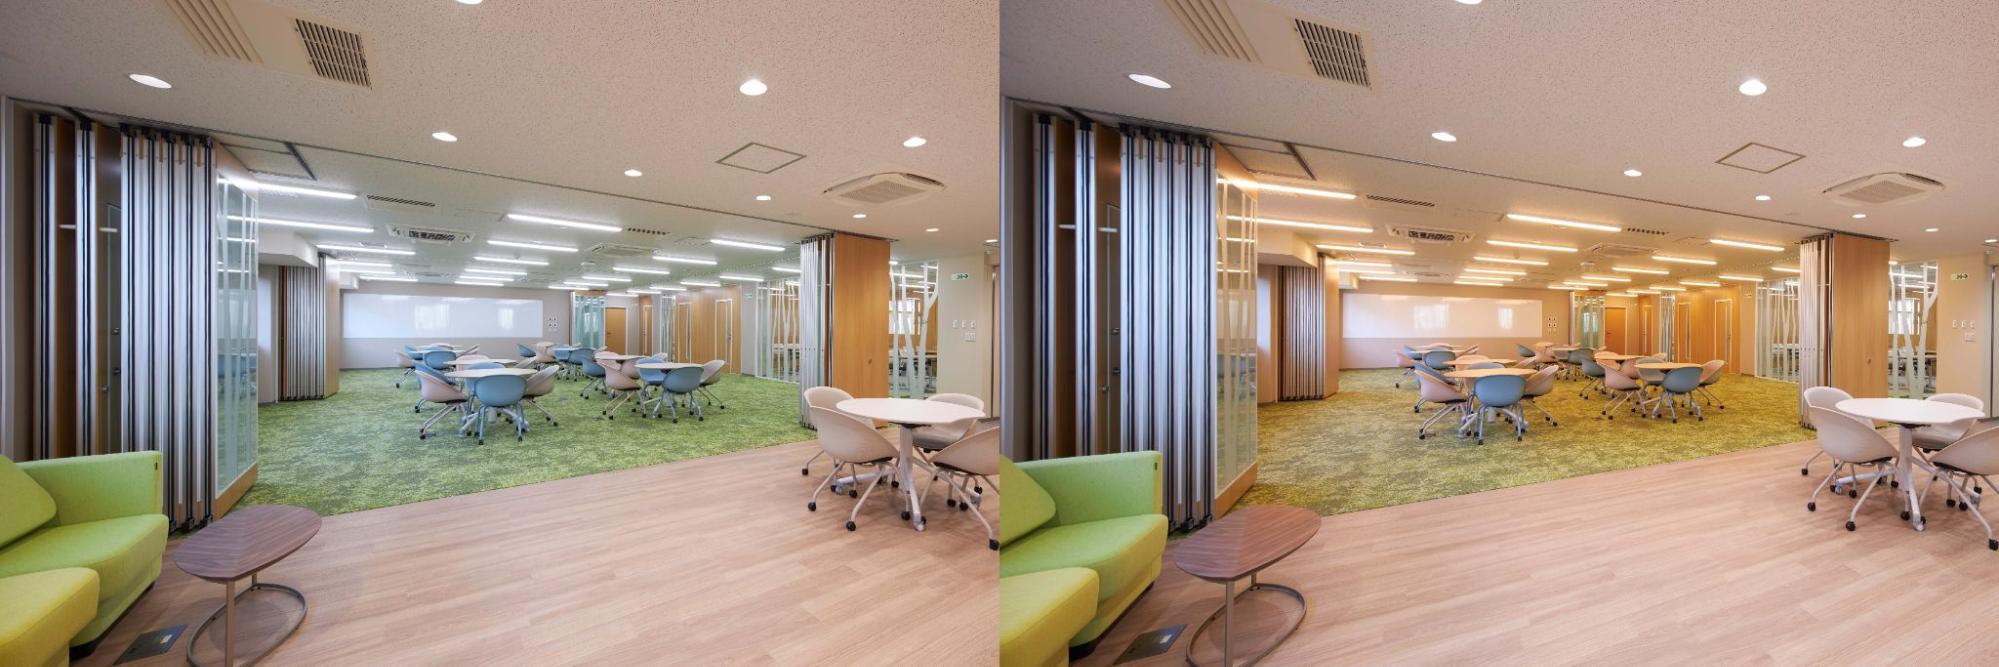 照明の色温度を変えることで雰囲気を変えられるオフィス内の打ち合わせスペースの写真